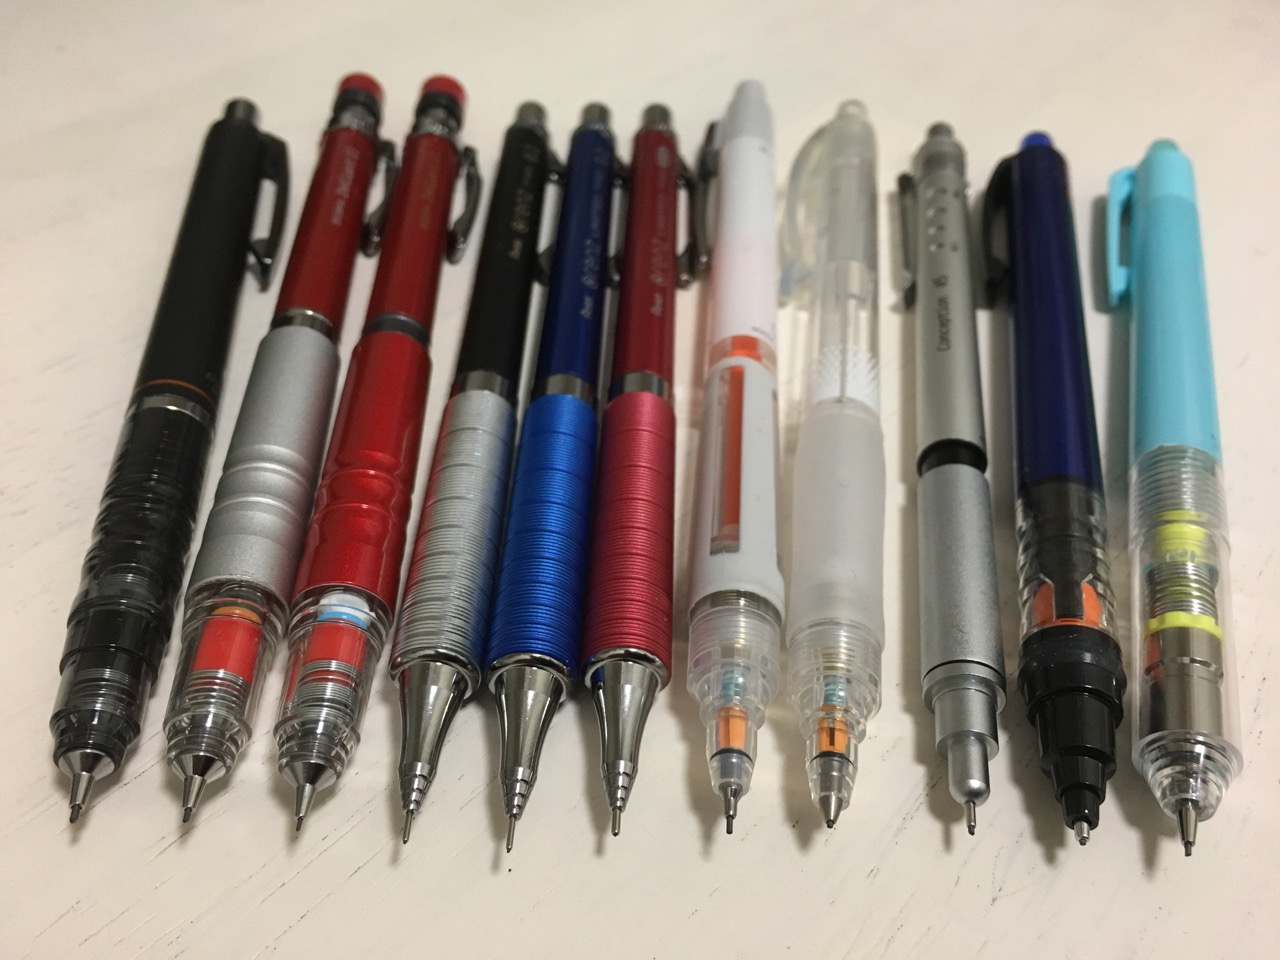 芯が折れないシャープペン徹底比較 折れずに書きやすいシャープペンおすすめランキング 6選 Stationery Life